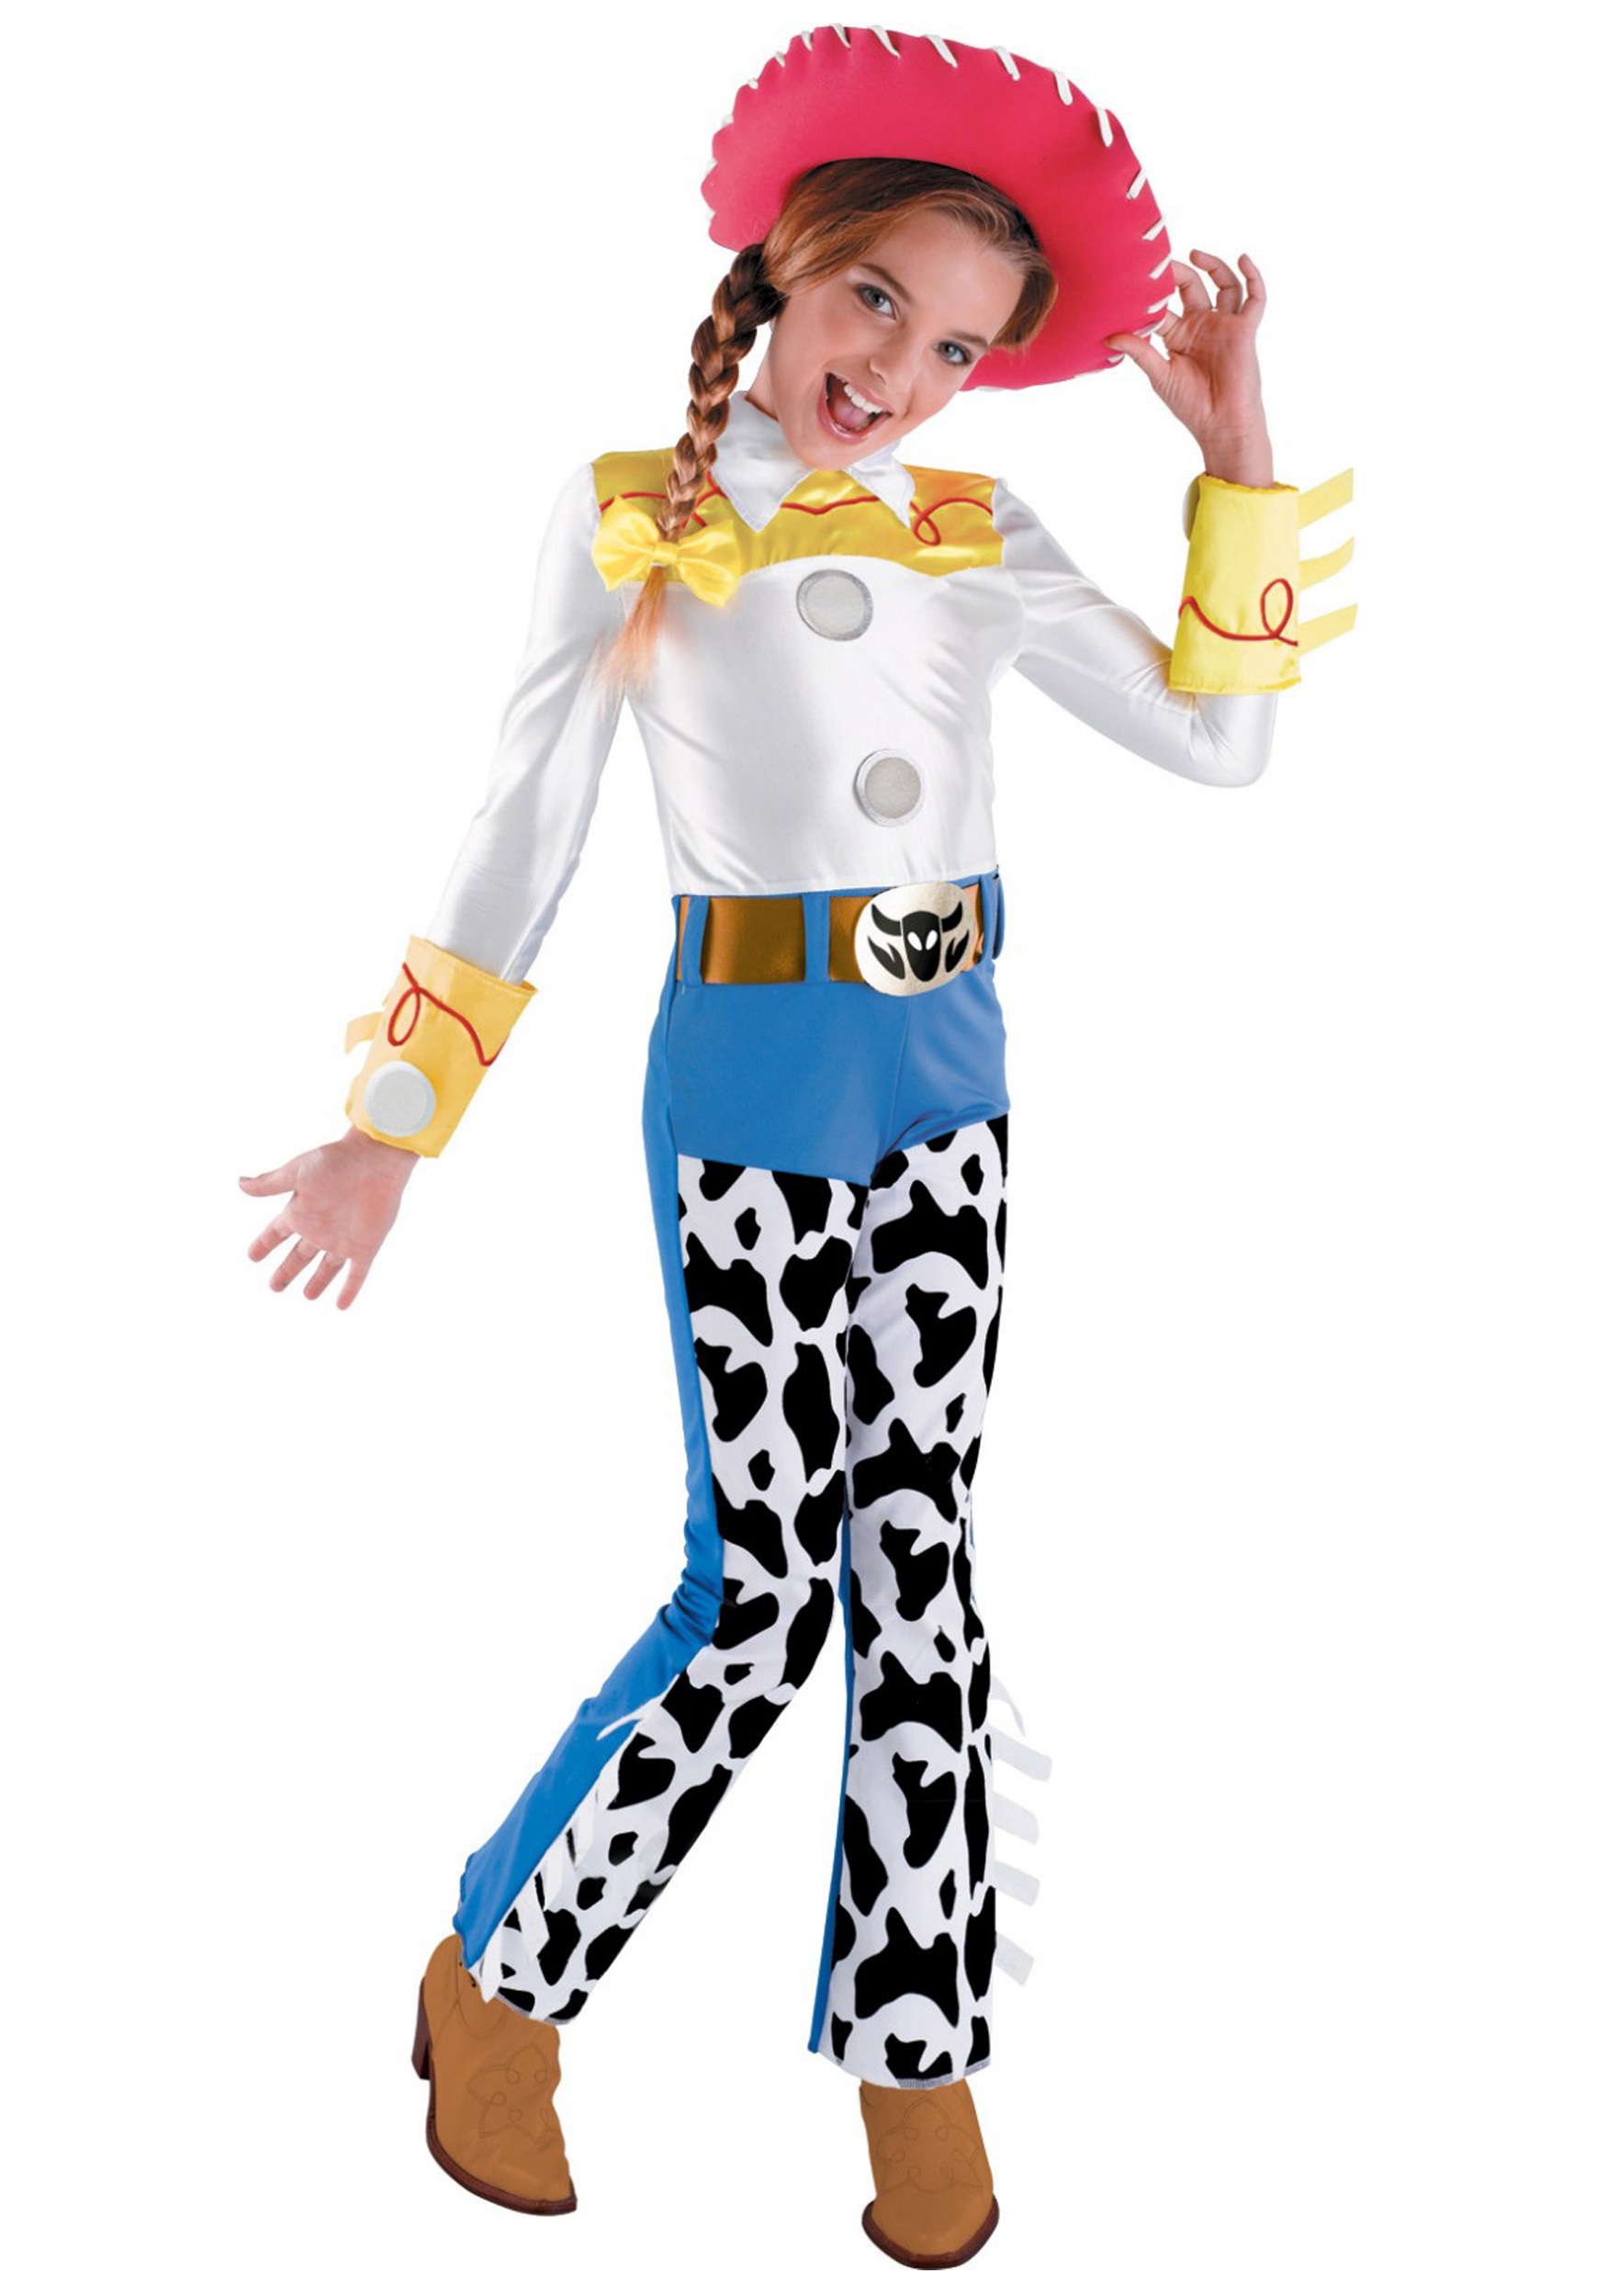 Kids Toy Story Jessie Costume. 